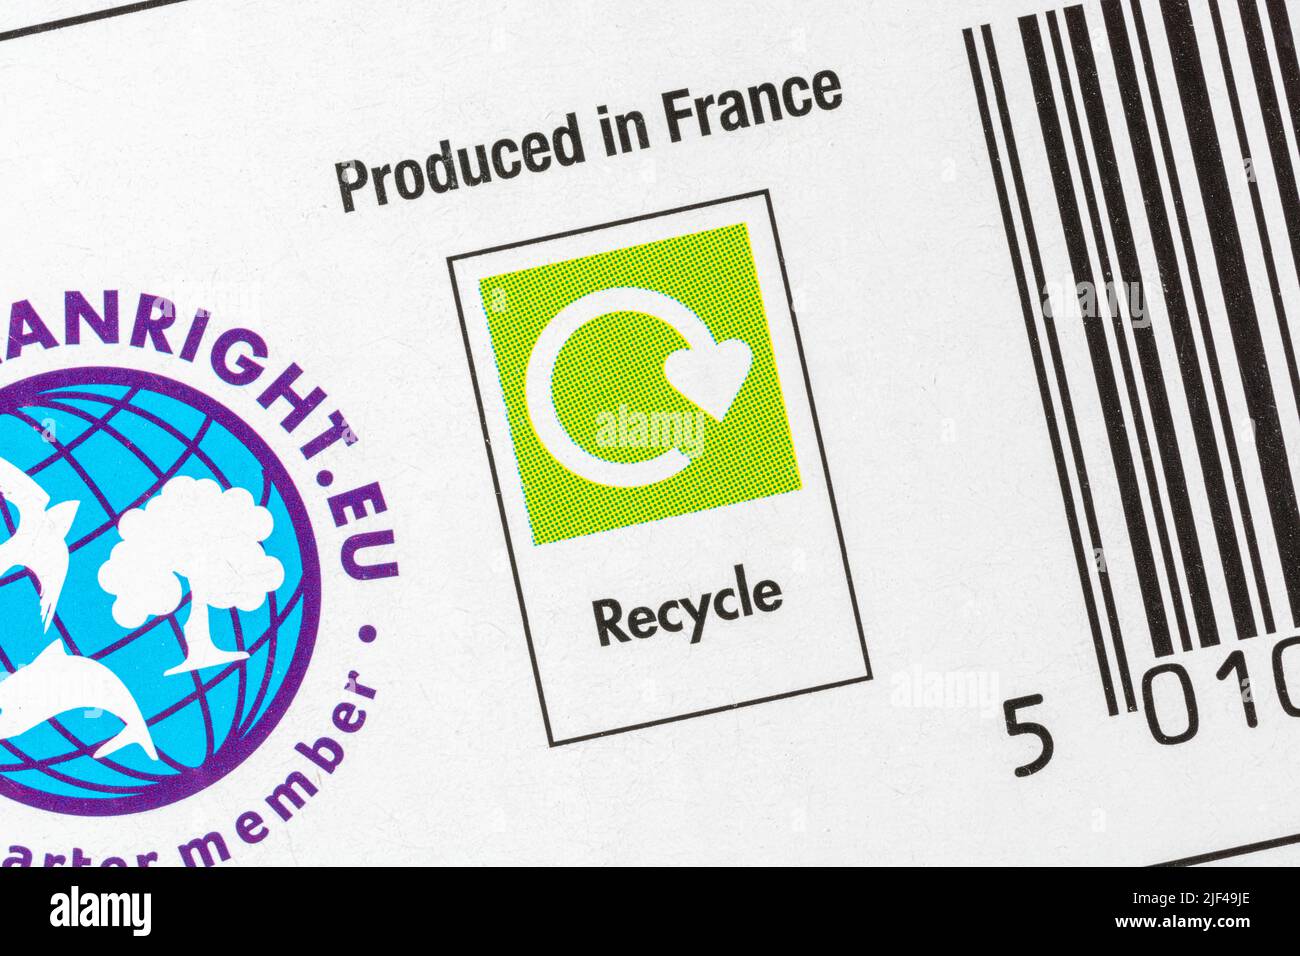 Fabricado en Francia Impreso en el lateral de la caja de polvo de jabón ASDA con un símbolo verde ampliamente reciclado. Para las importaciones francesas de exportación, el comercio entre el Reino Unido y Francia, el reciclaje. Foto de stock